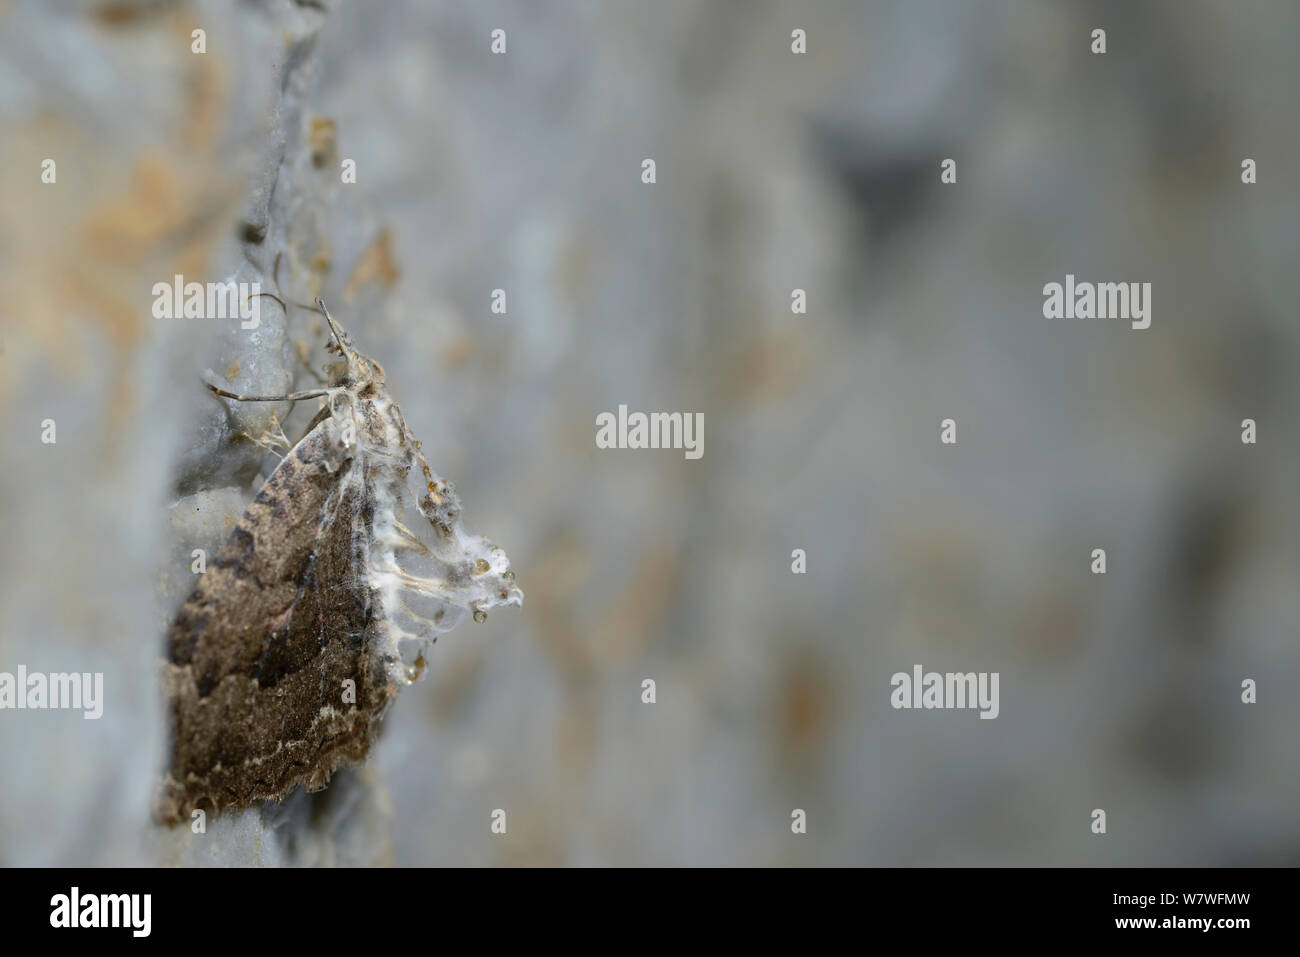 La tignola infettate con fungo parassita Cordyceps (sp) nella piccola grotta, Apuseni Montagne dei Carpazi, Mountain Range, Romania. Novembre Foto Stock